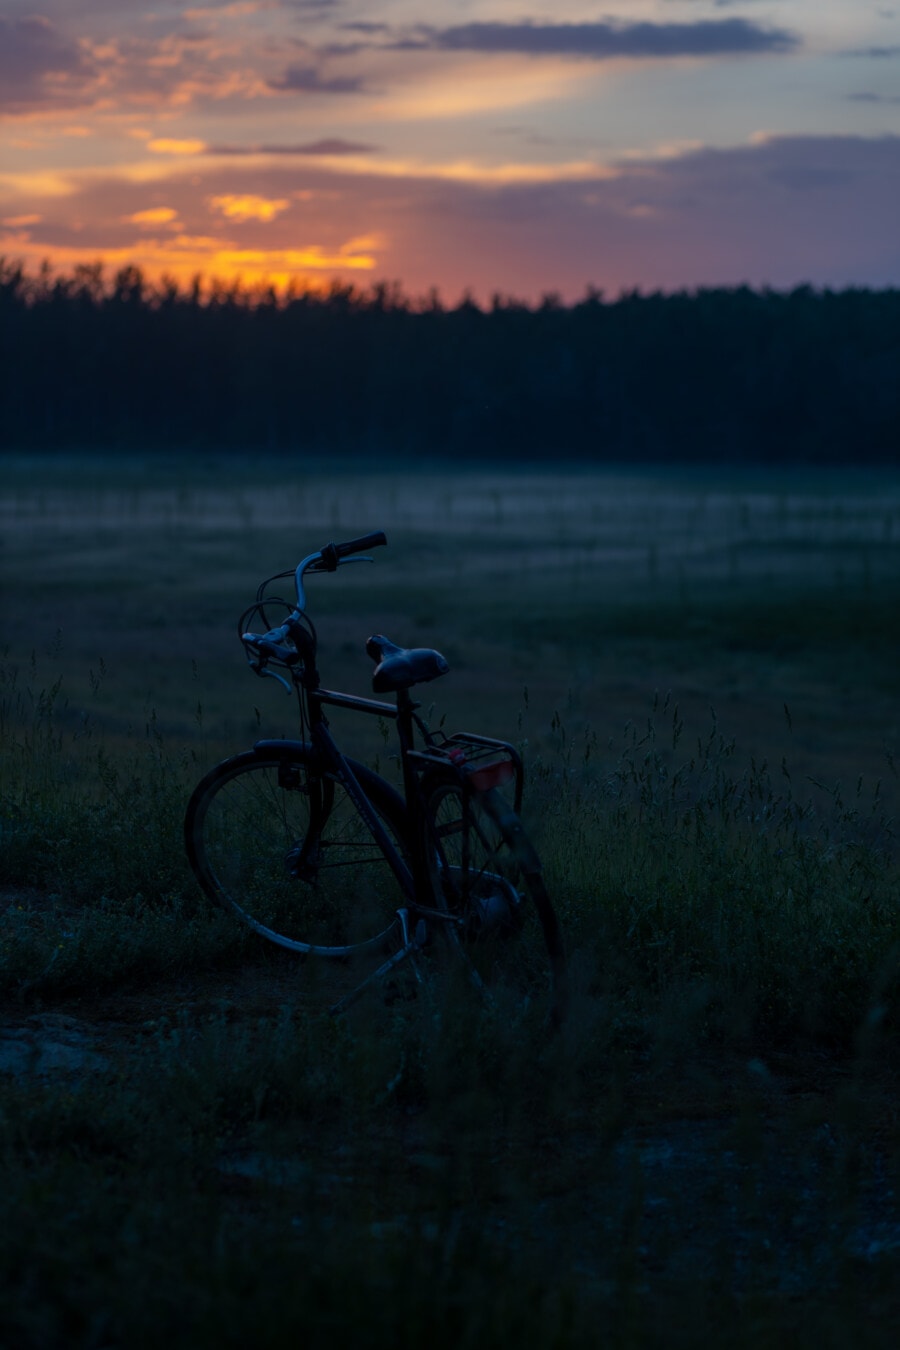 日出, 剪影, 阴影, 自行车, 早上, 雾, 农村, 轮, 黎明, 车辆